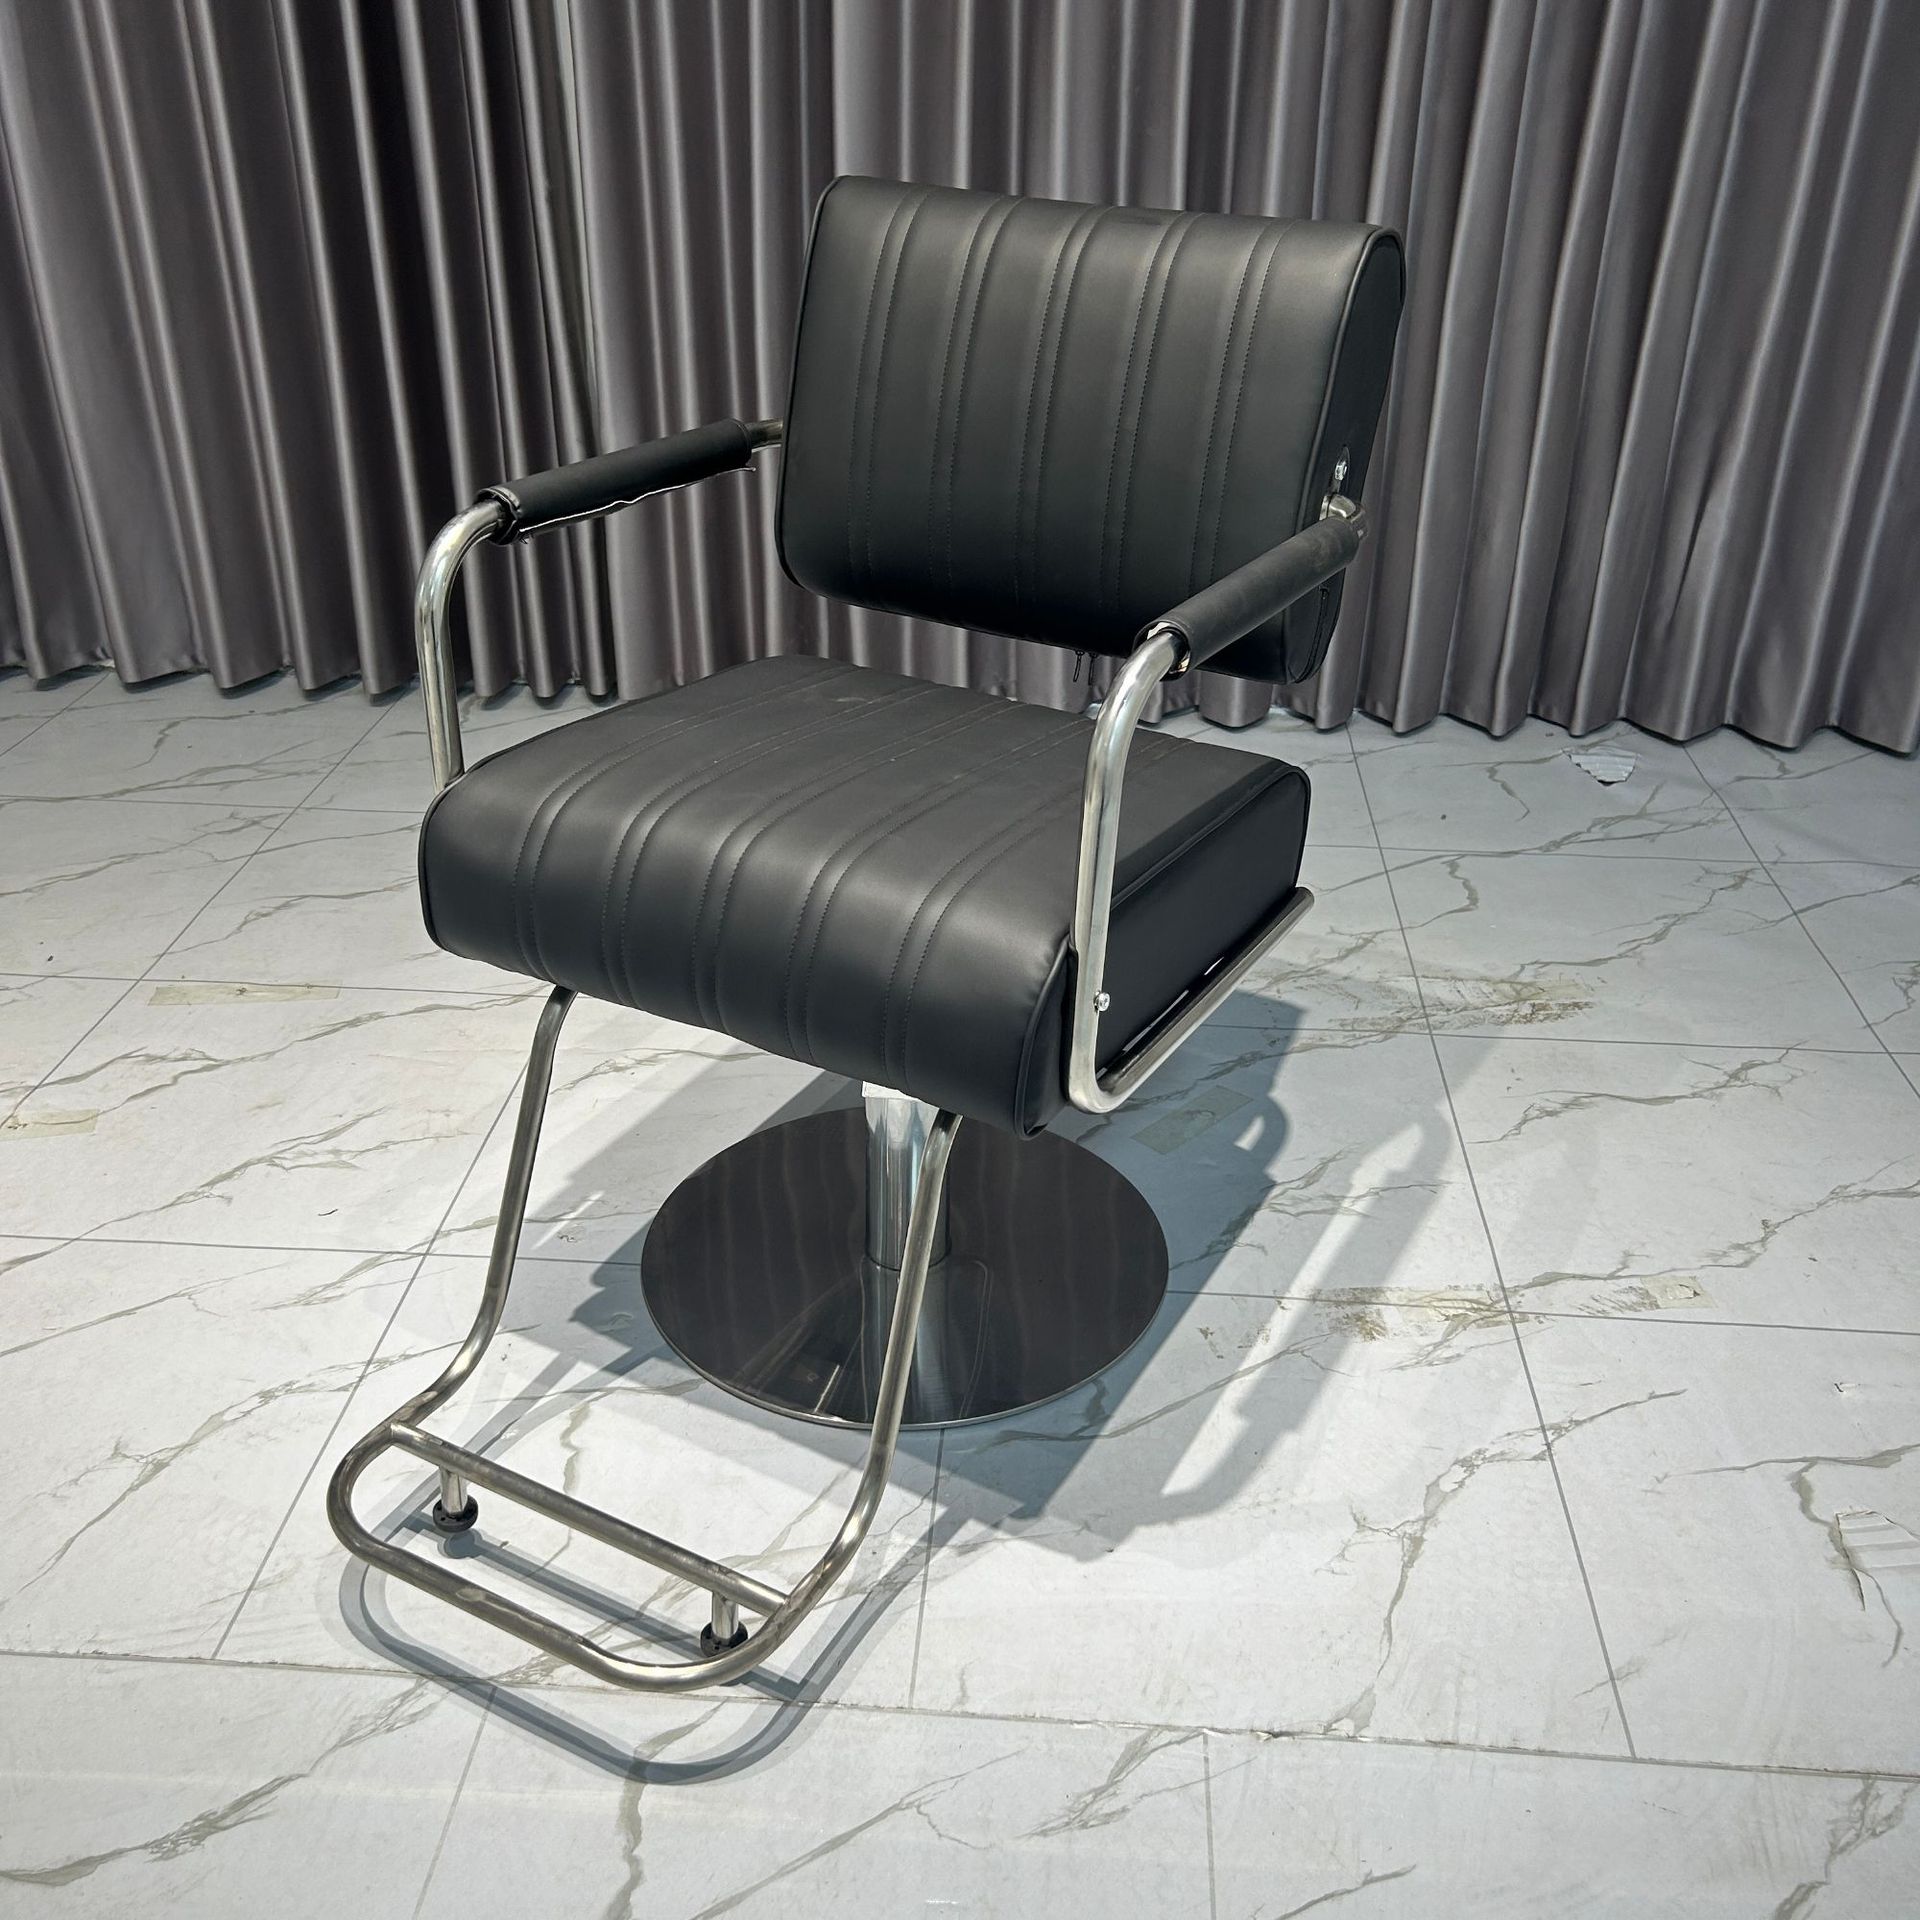 高端新款美发椅专用简约现代剪发椅升降烫染椅凳子网红理发店椅子